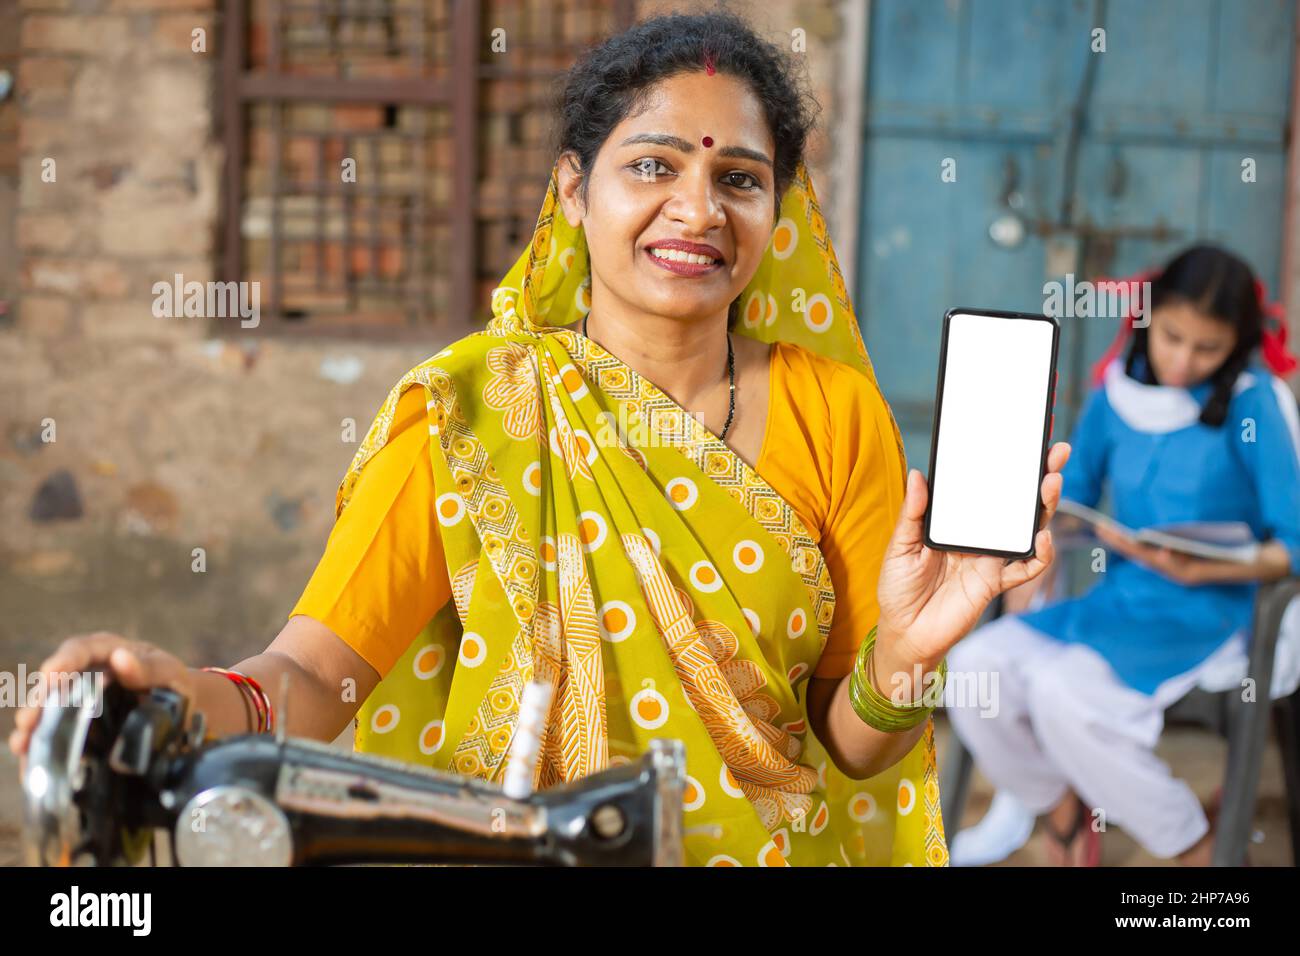 Porträt einer glücklichen traditionellen indischen Frau, die mit einer Nähmaschine einen Sari trägt, während sie ein Smartphone mit leerem Display zeigt, um Werbung zu schalten, weiblich Stockfoto